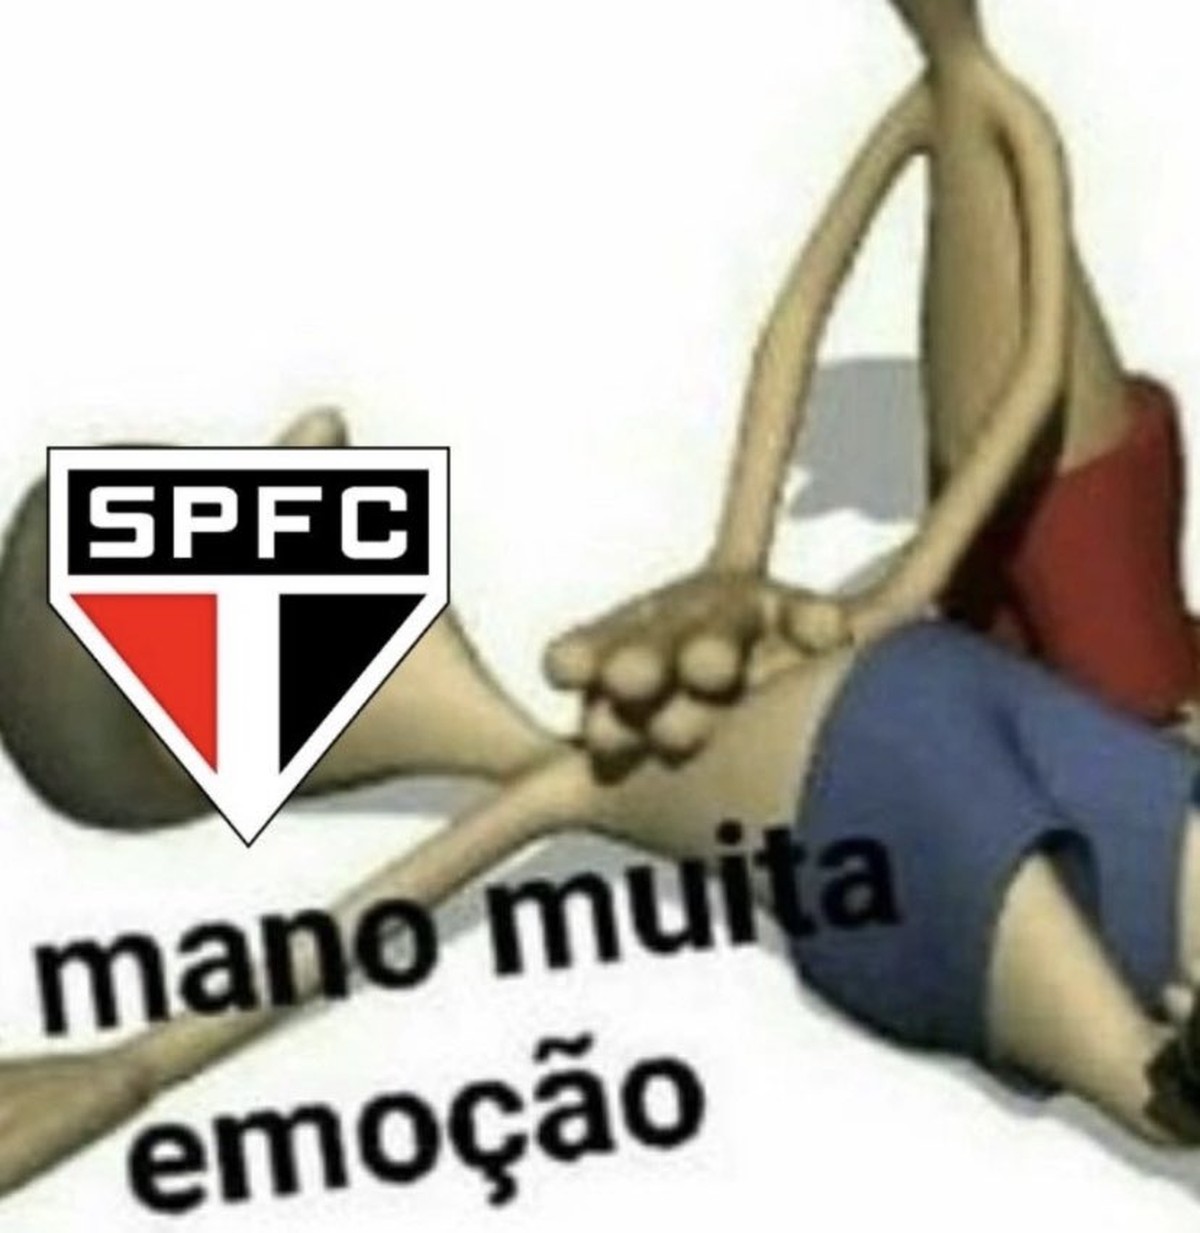 Os melhores memes e zoeiras de São Paulo x Flamengo